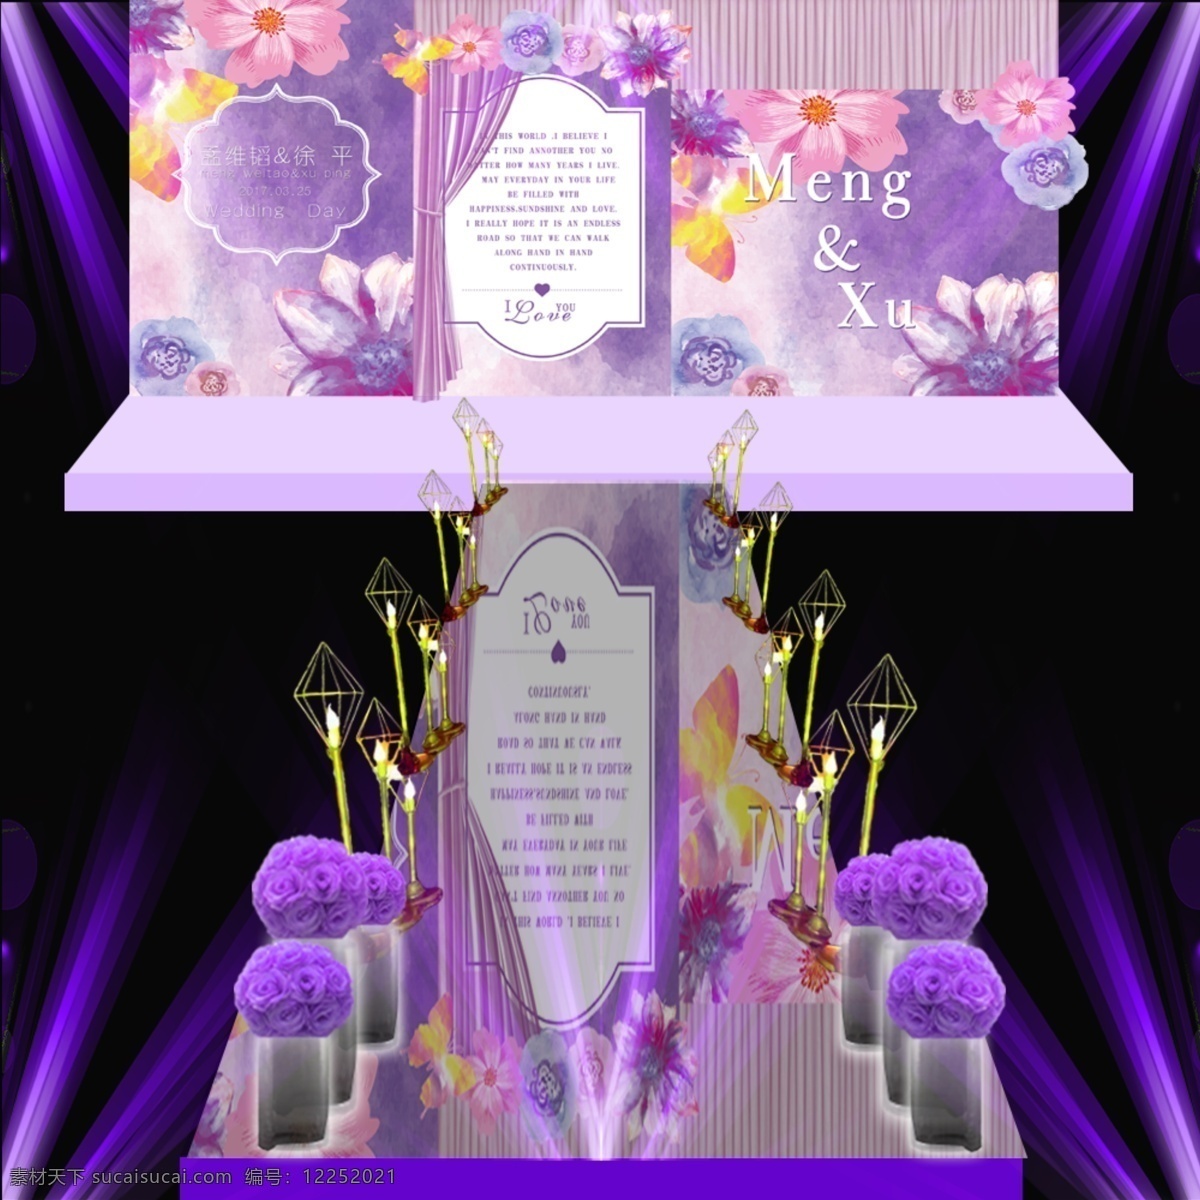 紫色 婚礼 效果图 浪漫 现场布置